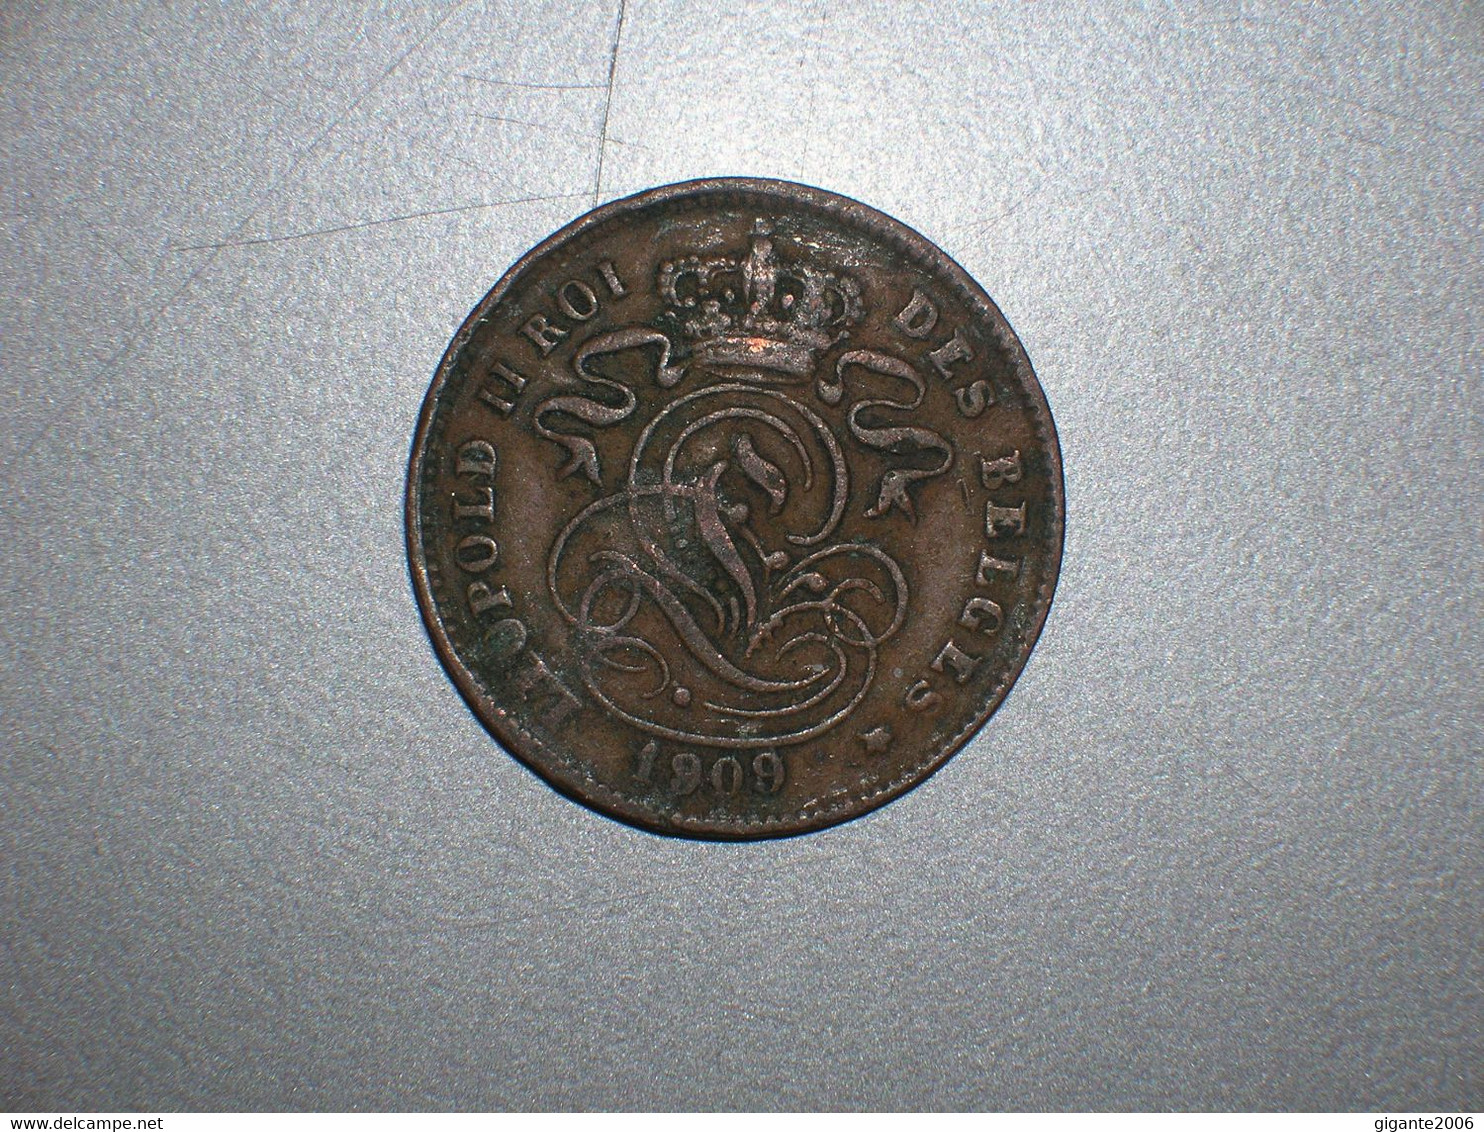 BELGICA 2 CENTIMOS 1909 FR (1658) - 2 Cent